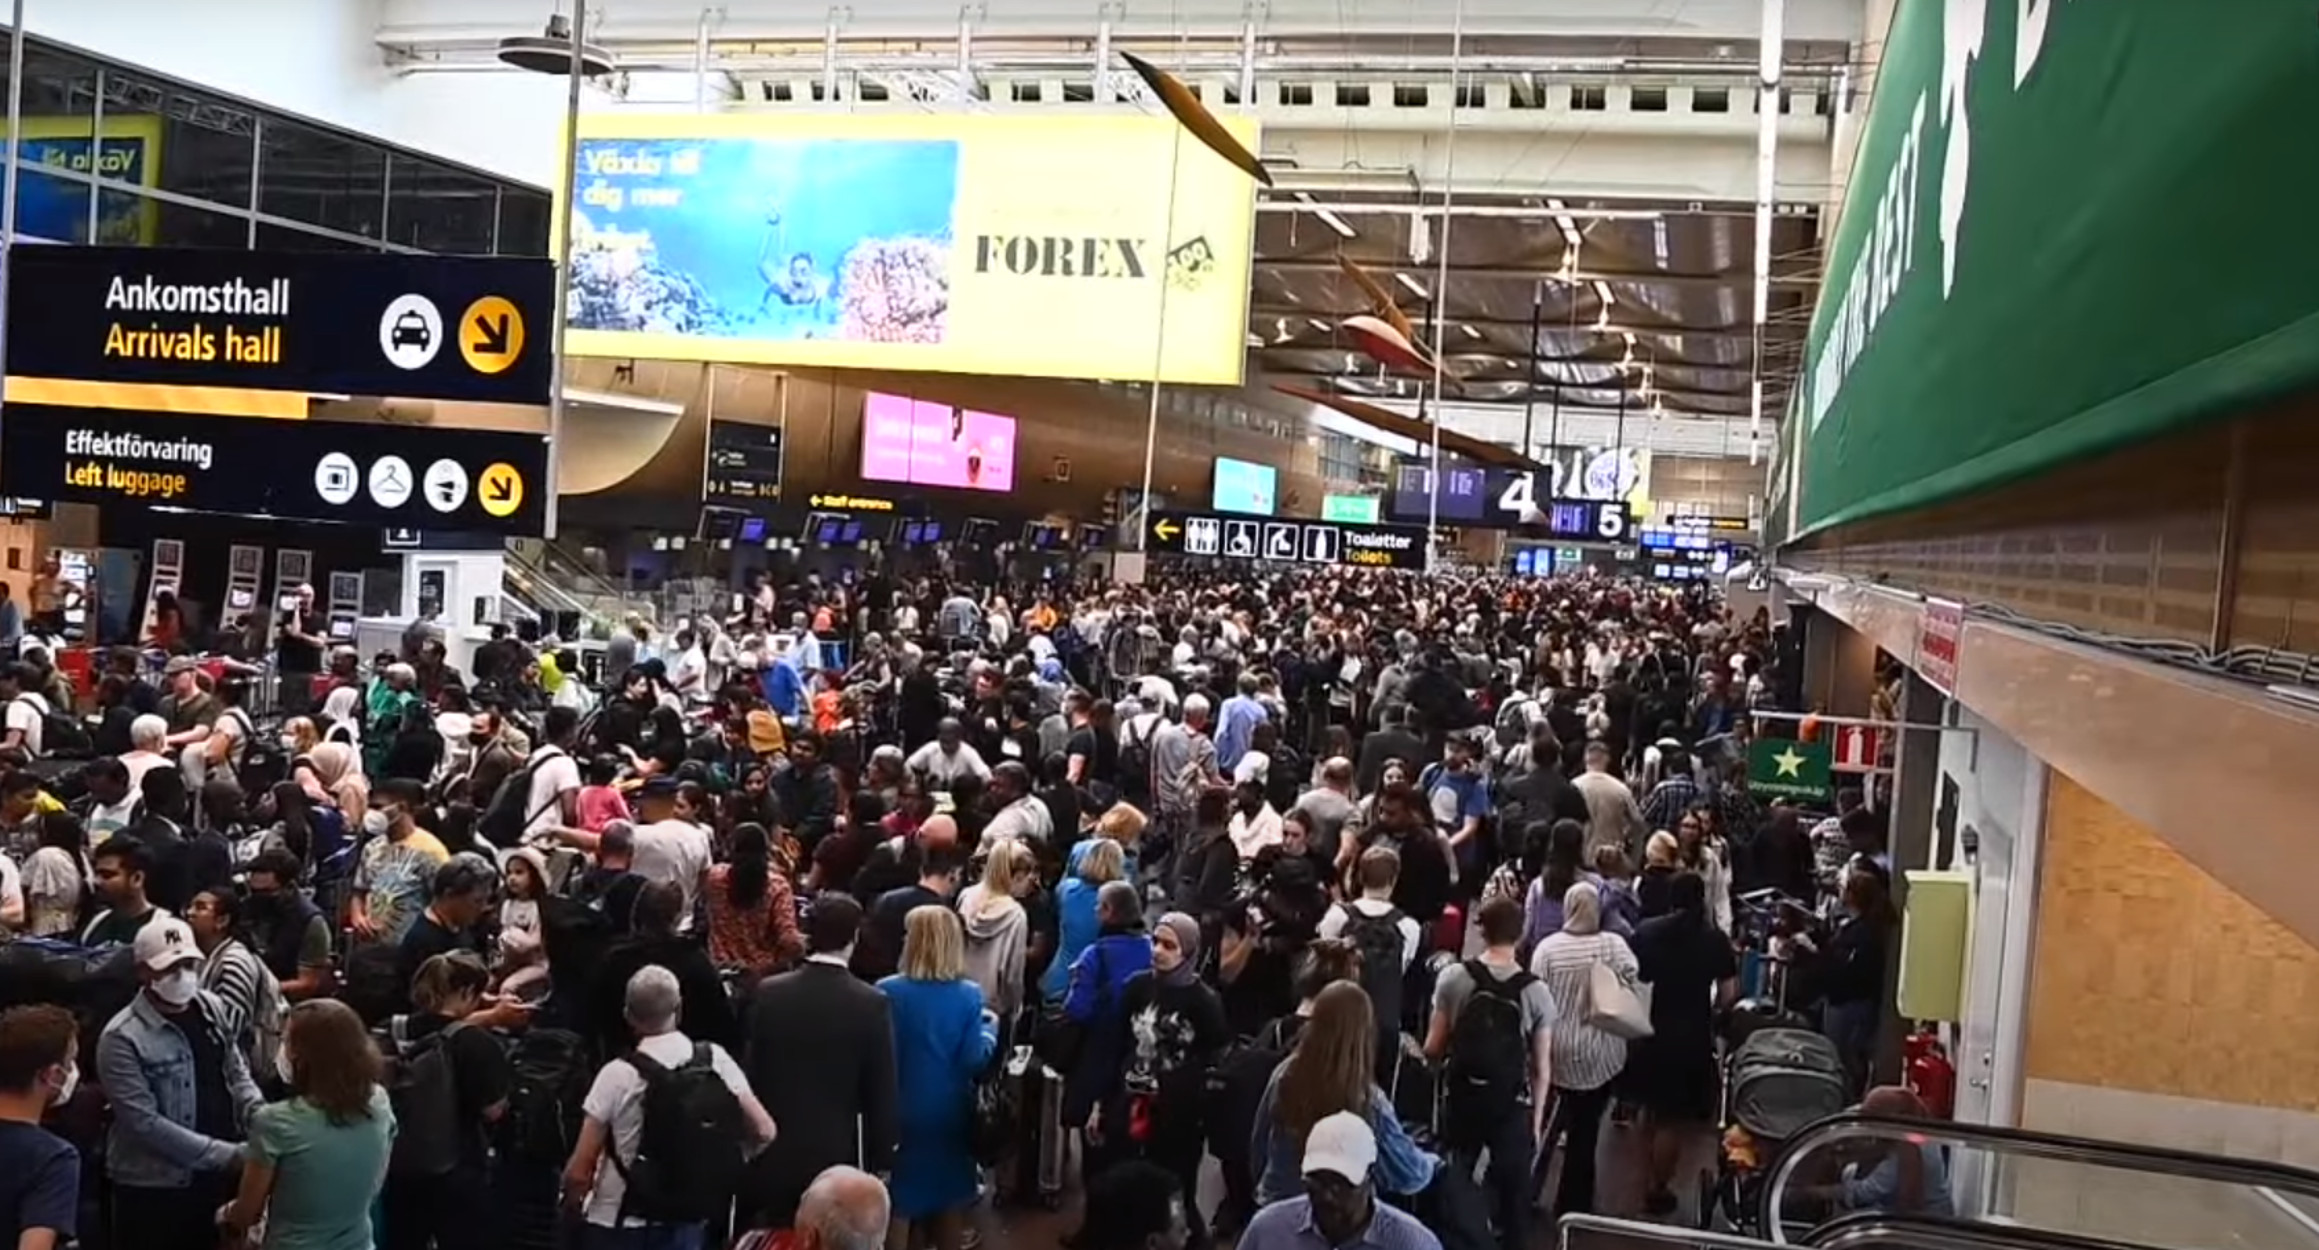 Σουηδία: Ασύλληπτο κυκλοφοριακό χάος στο αεροδρόμιο Αρλάντα – Αποκλείστηκαν δρόμοι, ακυρώθηκαν δρομολόγια τρένων